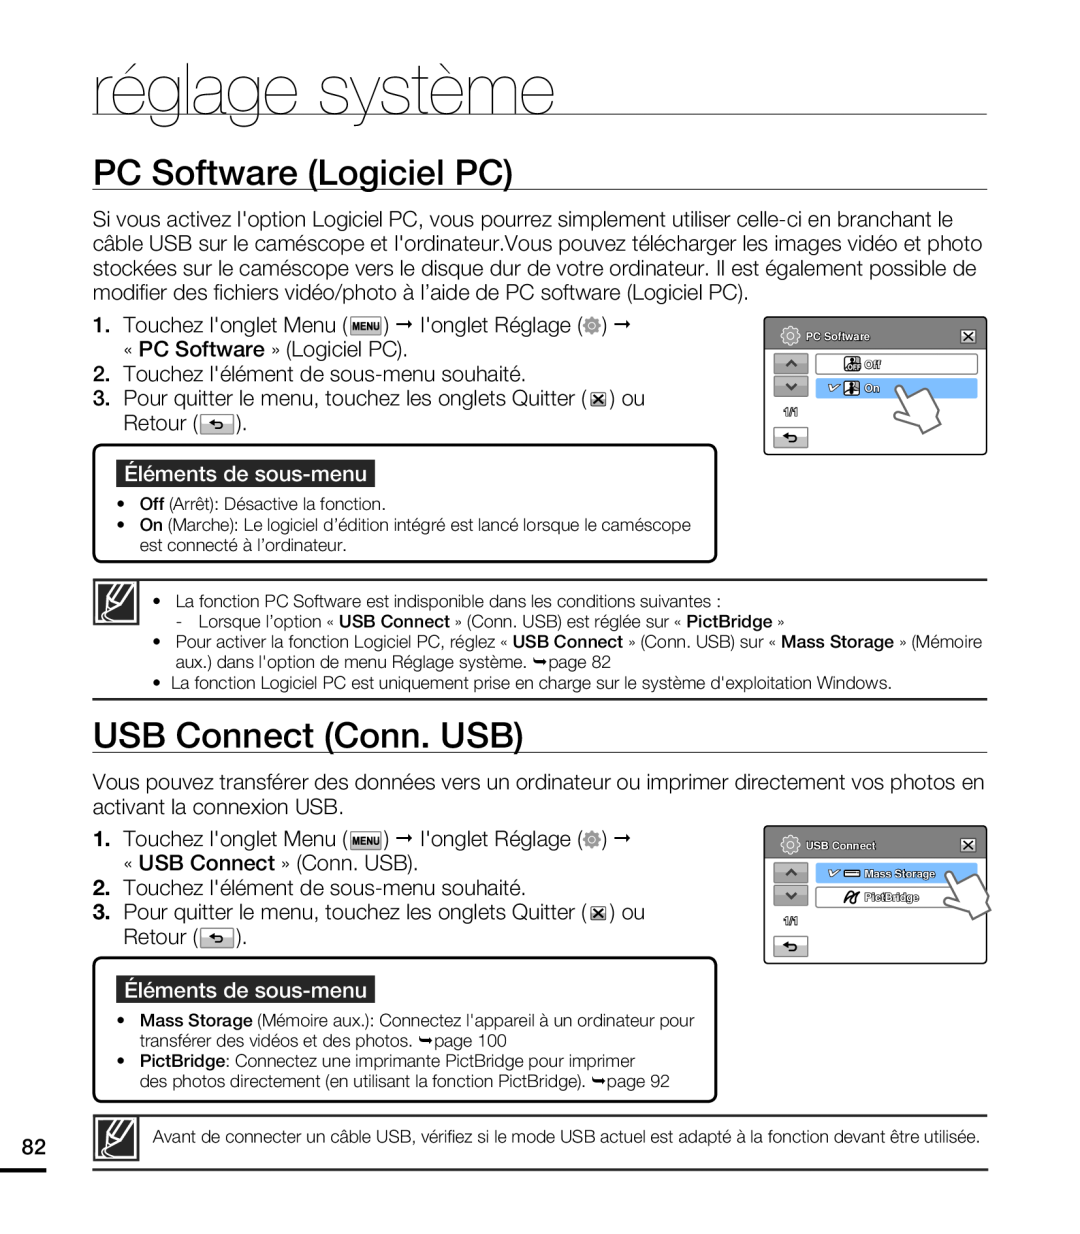 Samsung HMX-T10WP/EDC manual PC Software Logiciel PC, USB Connect Conn. USB, réglage système, Éléments de sous-menu 